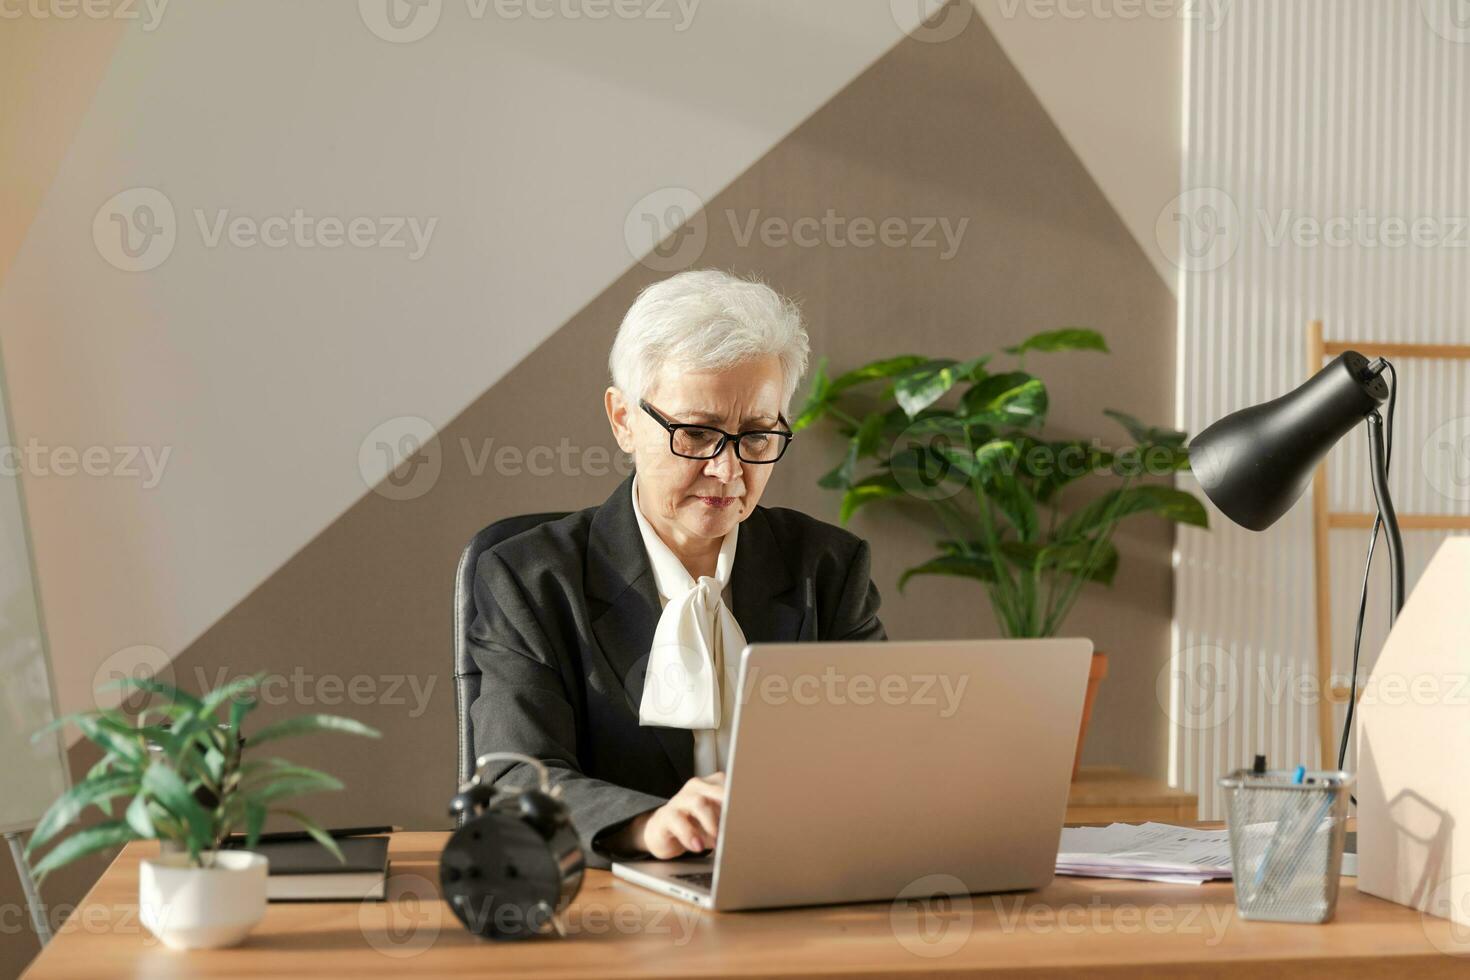 självsäker eleganta europeisk mitten åldrig senior kvinna använder sig av bärbar dator på arbetsplats. eleganta äldre mogna 60s grå håriga lady affärskvinna Sammanträde på kontor tabell. chef ledare lärare professionell arbetstagare. foto